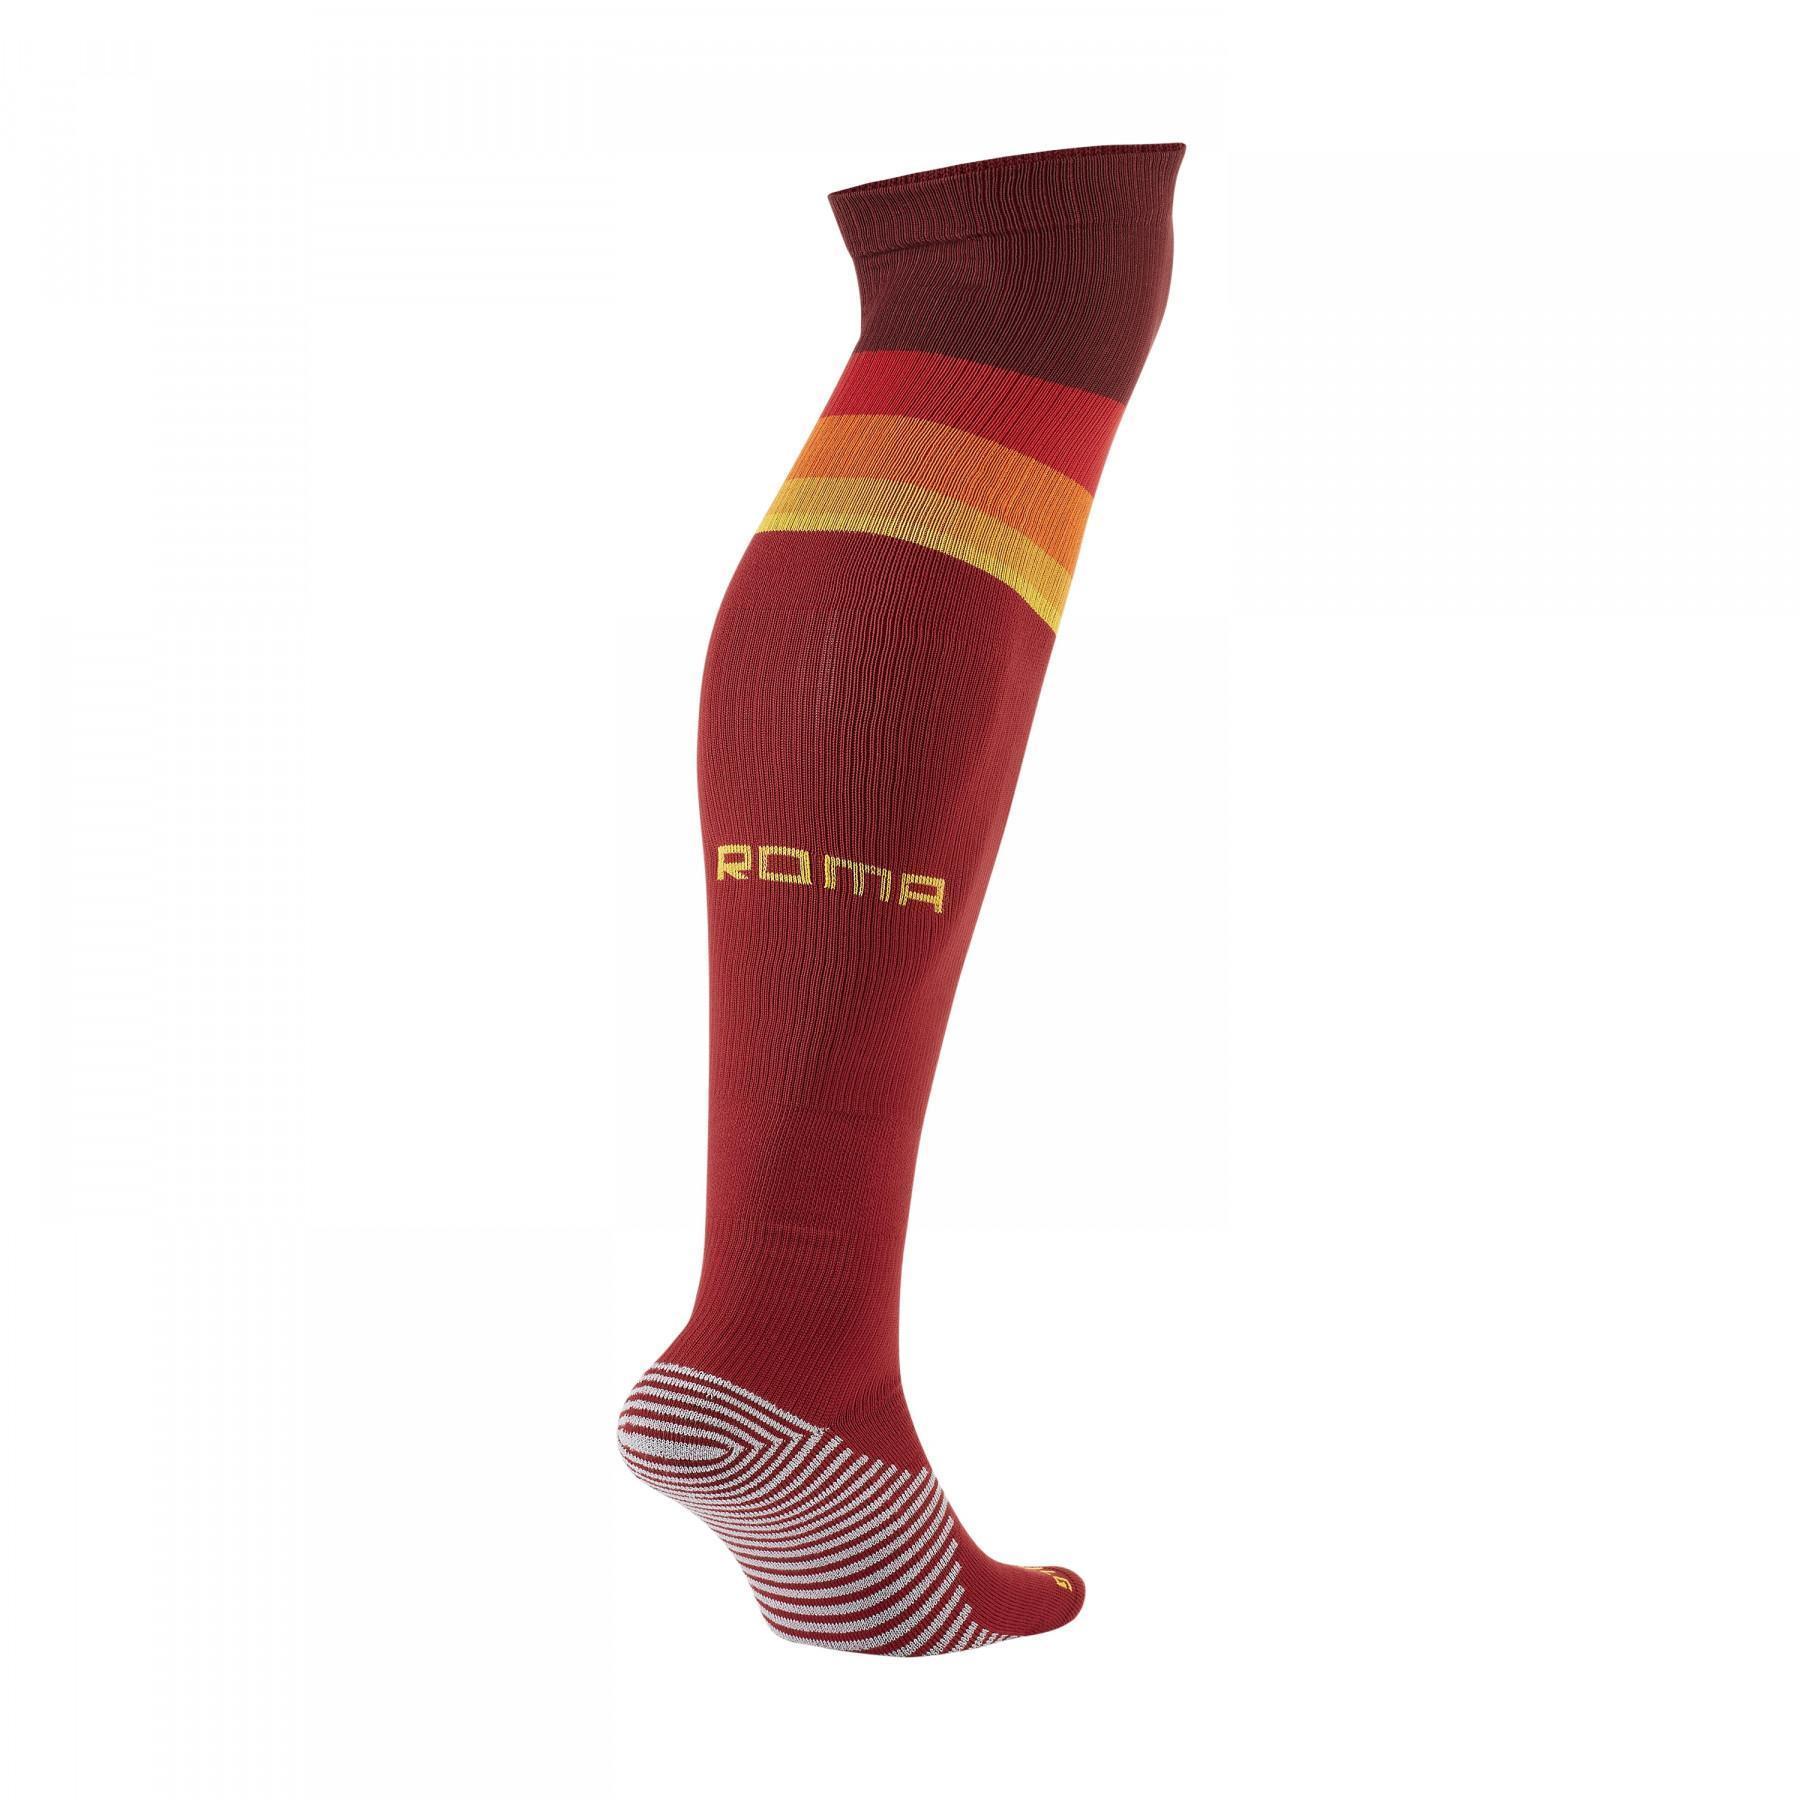 Home sokken AS Roma 2020/21 